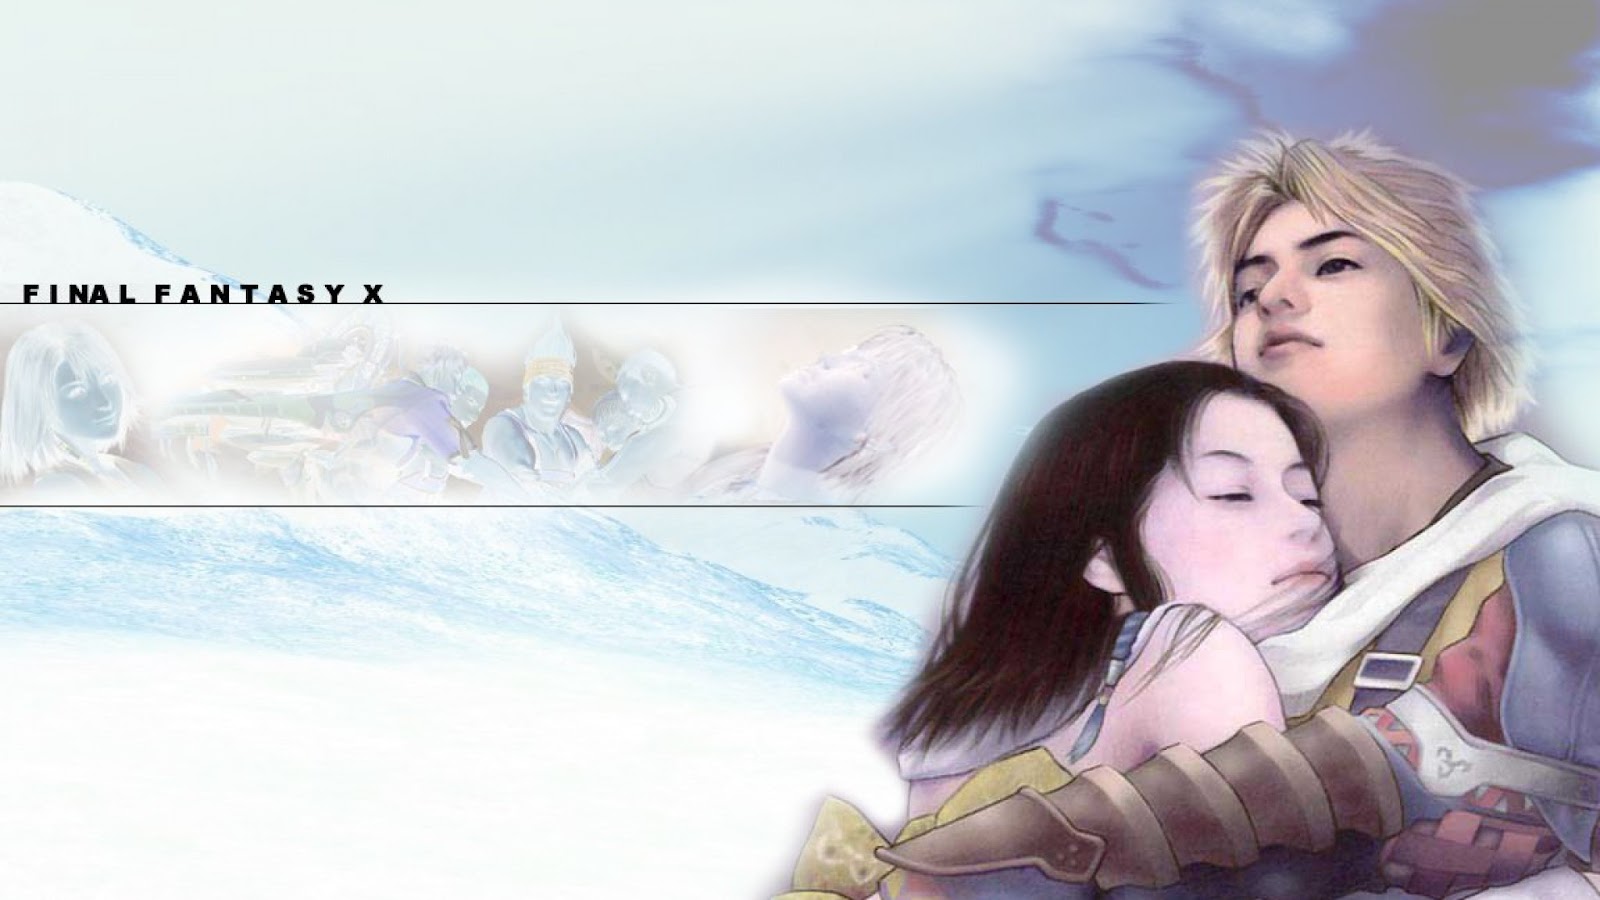 Final Fantasy X Wallpaper In HD 1080p